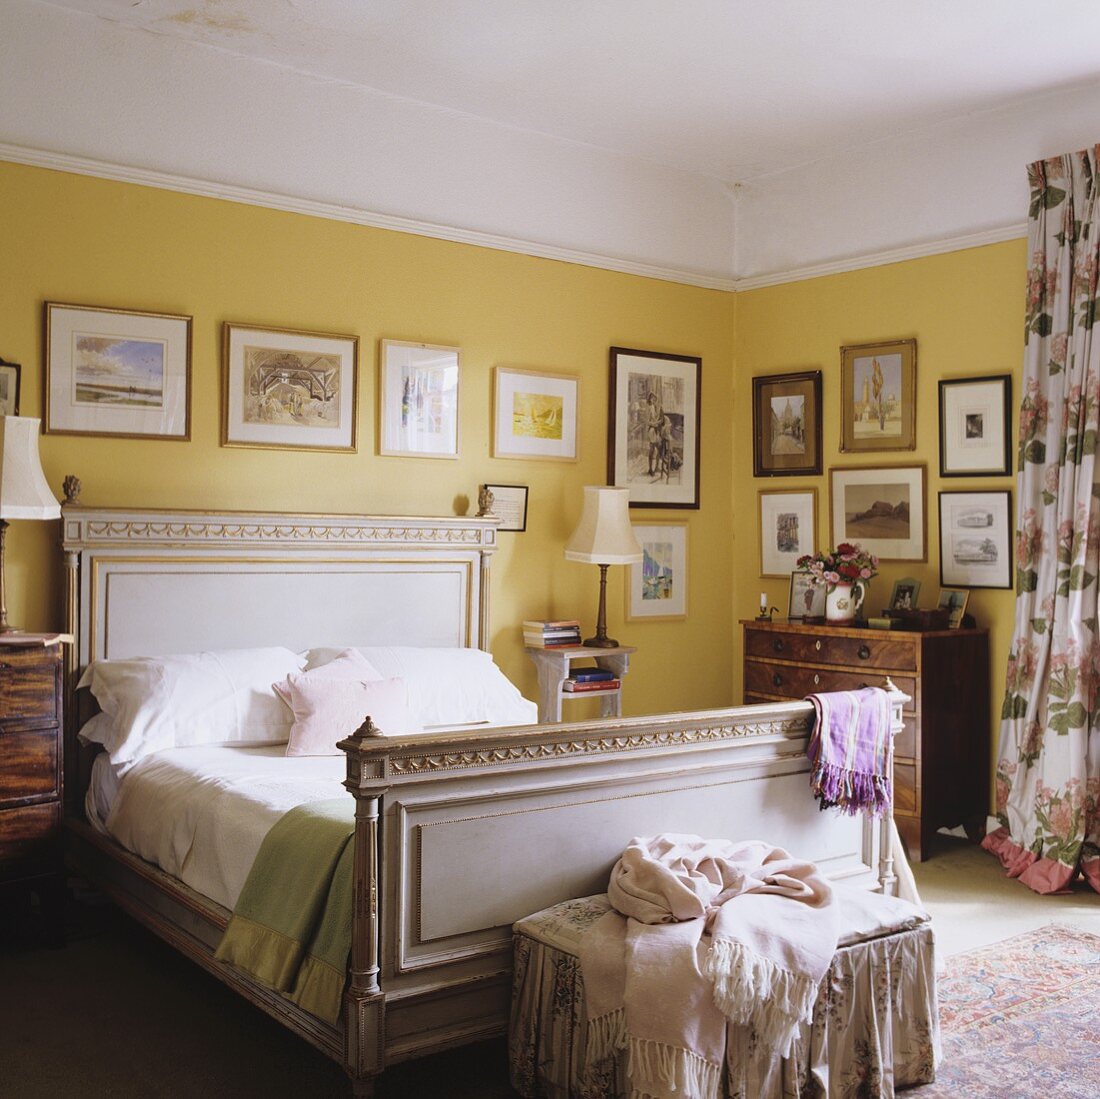 Schlafraum in einem Landhaus mit antik-weißem Holzbett und Bildern vor gelbgetönter Wand